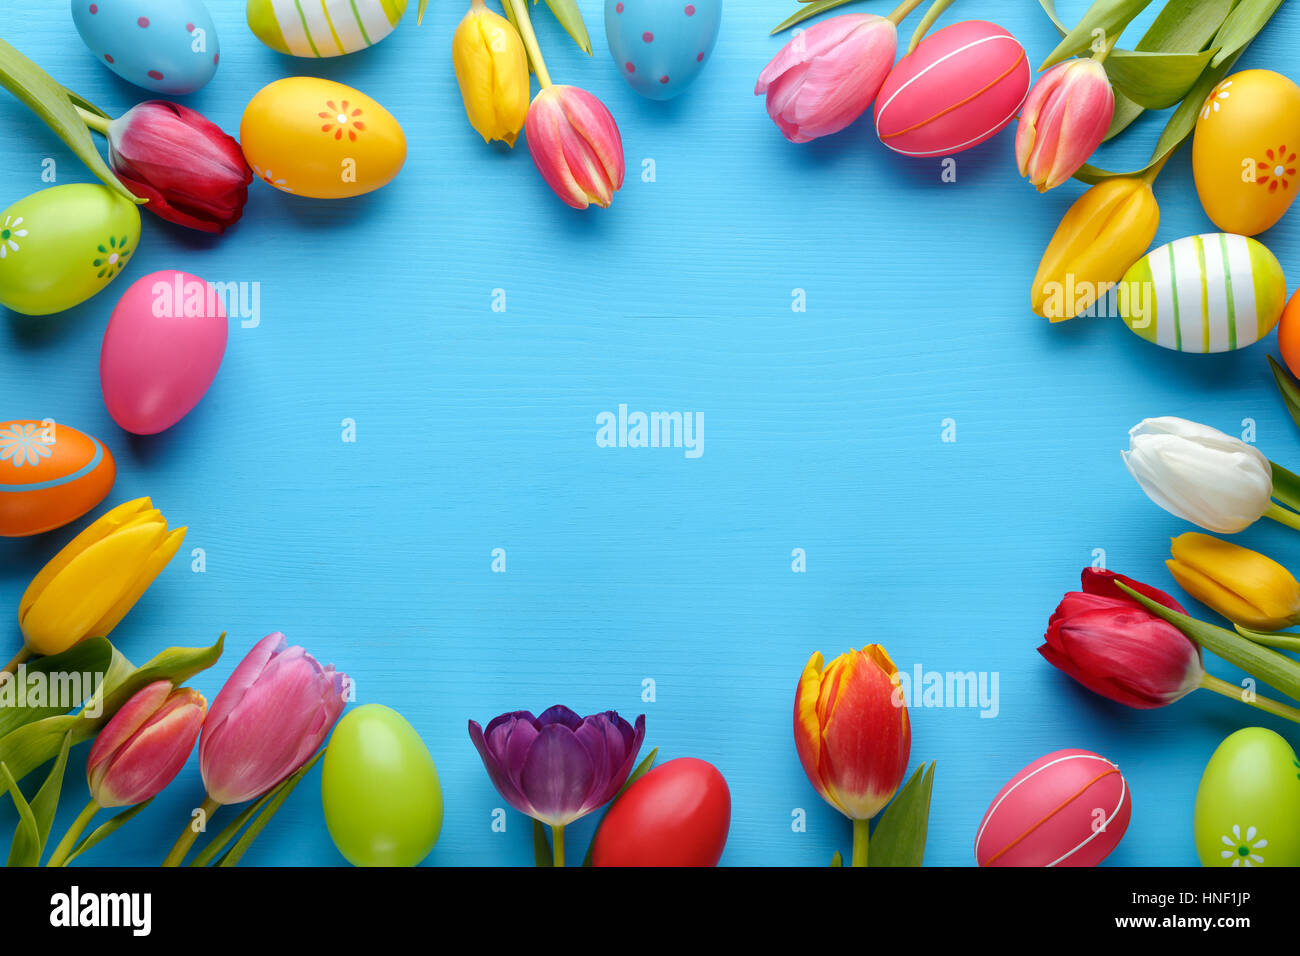 Los huevos de Pascua con tulip flower Foto de stock